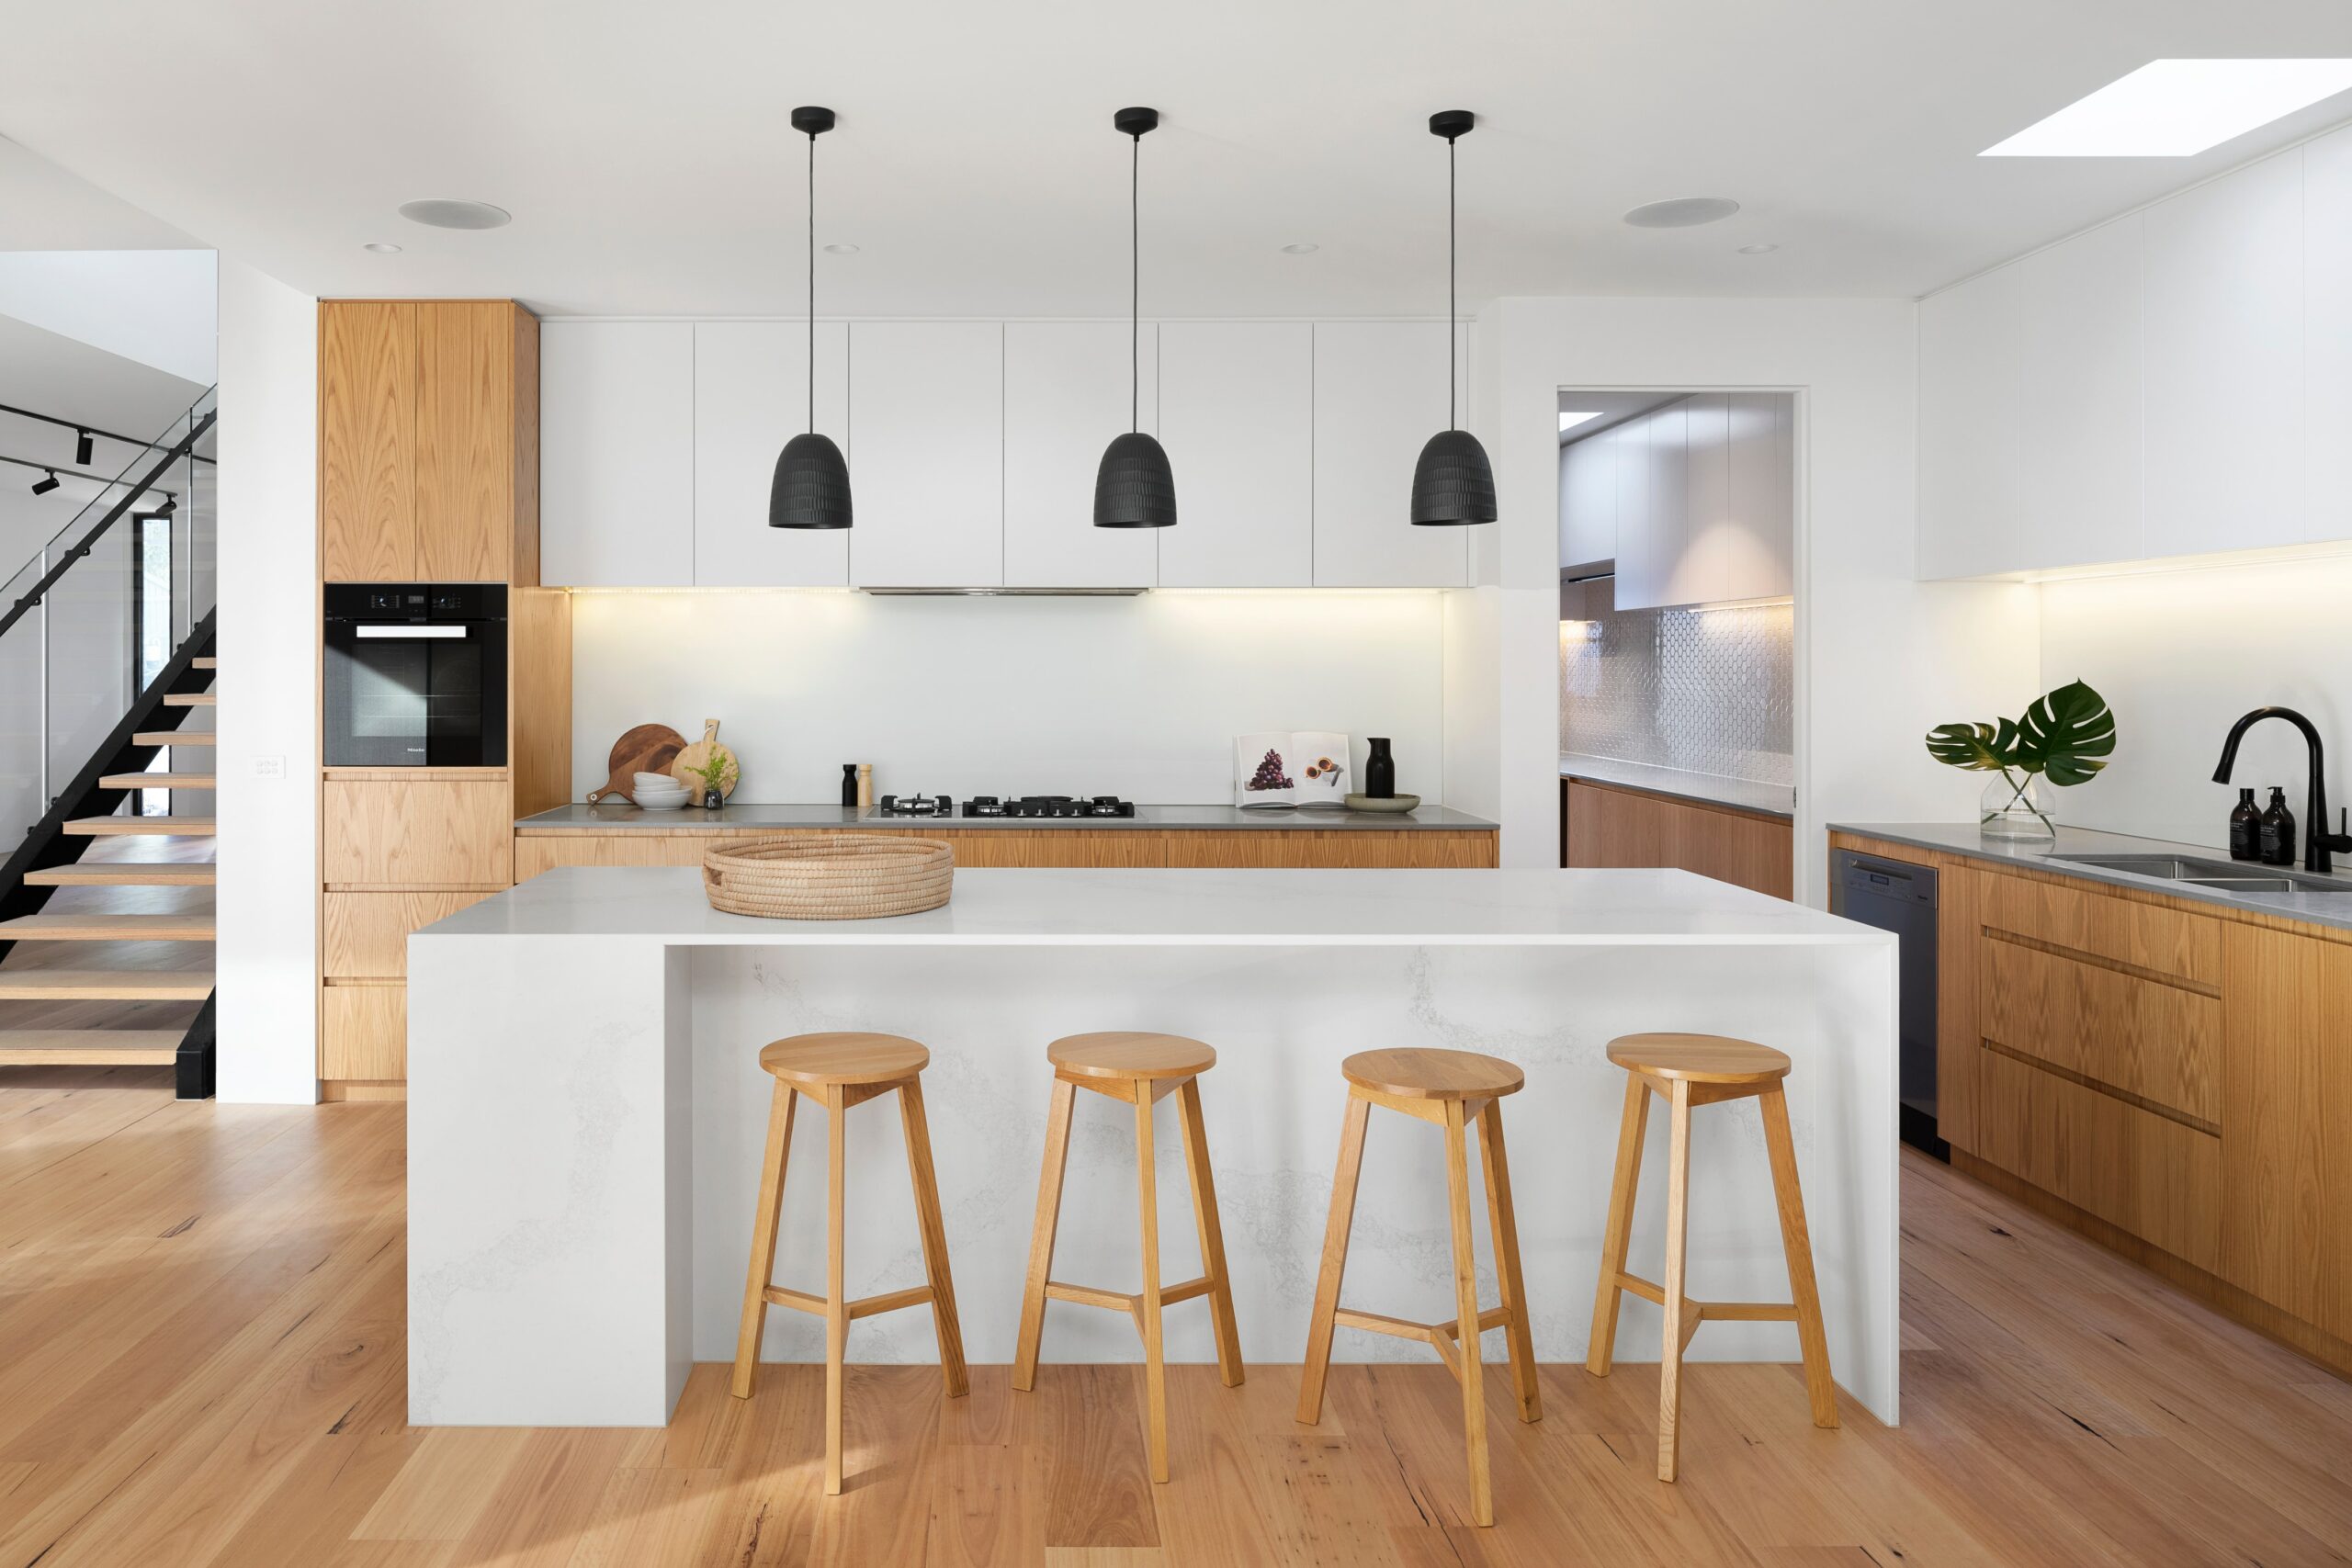 kitchen renovation cost in dubai